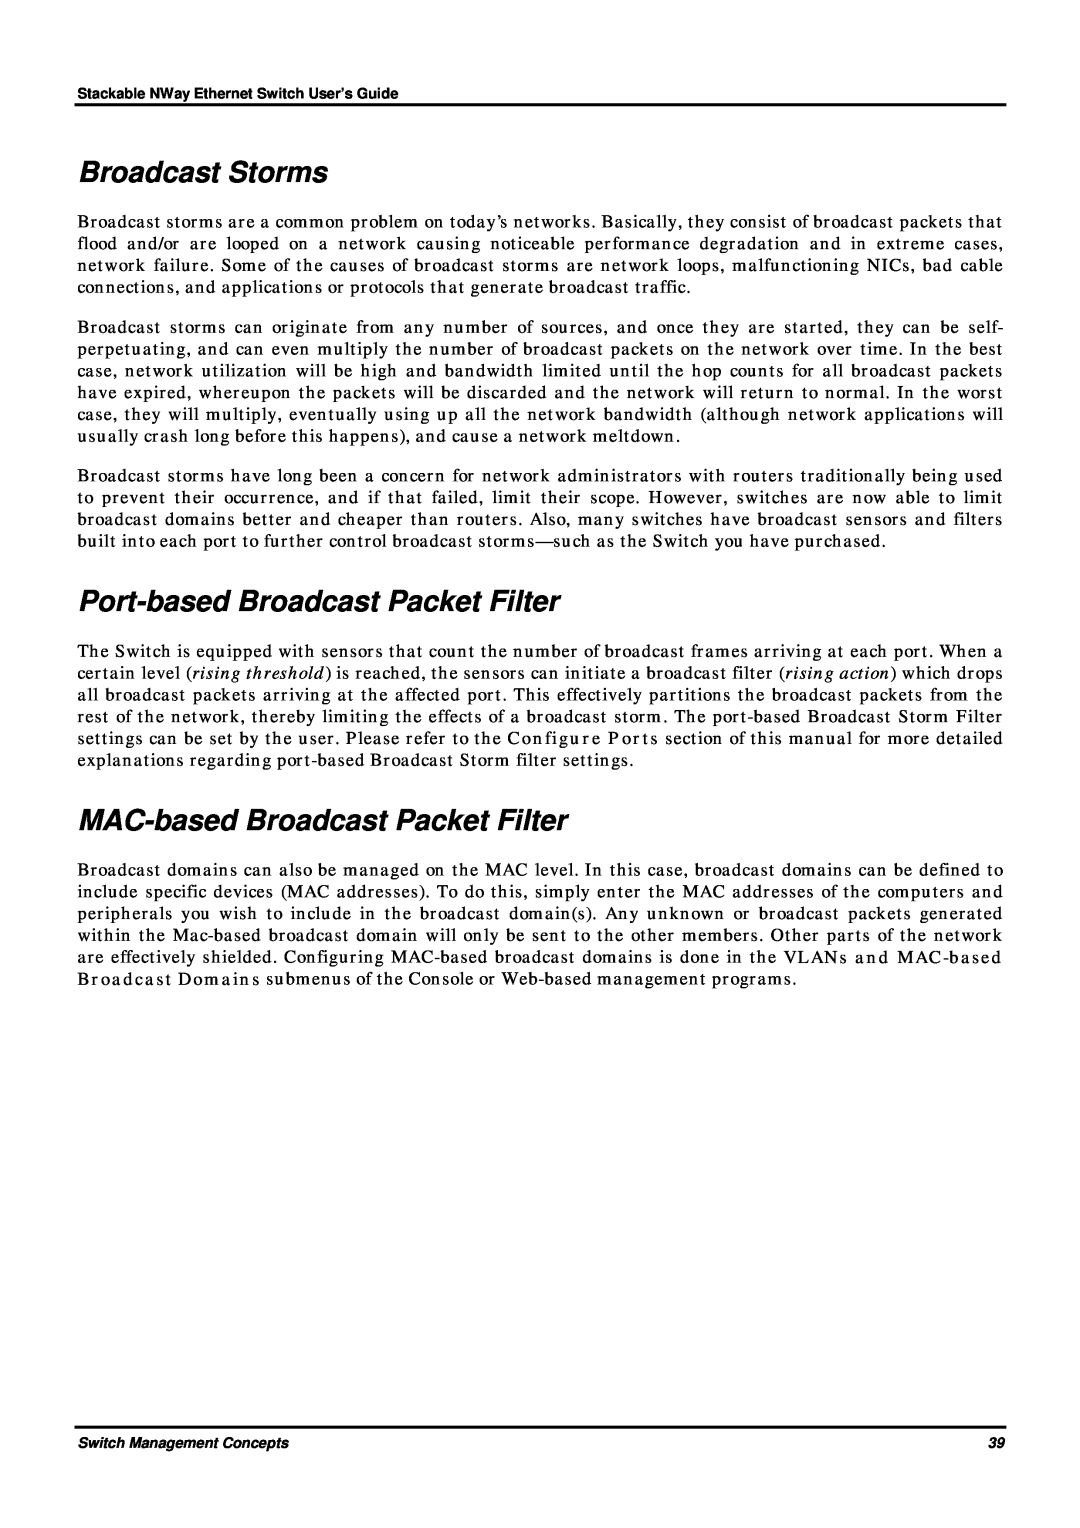 D-Link DES-3624 manual Broadcast Storms, Port-based Broadcast Packet Filter, MAC-based Broadcast Packet Filter 